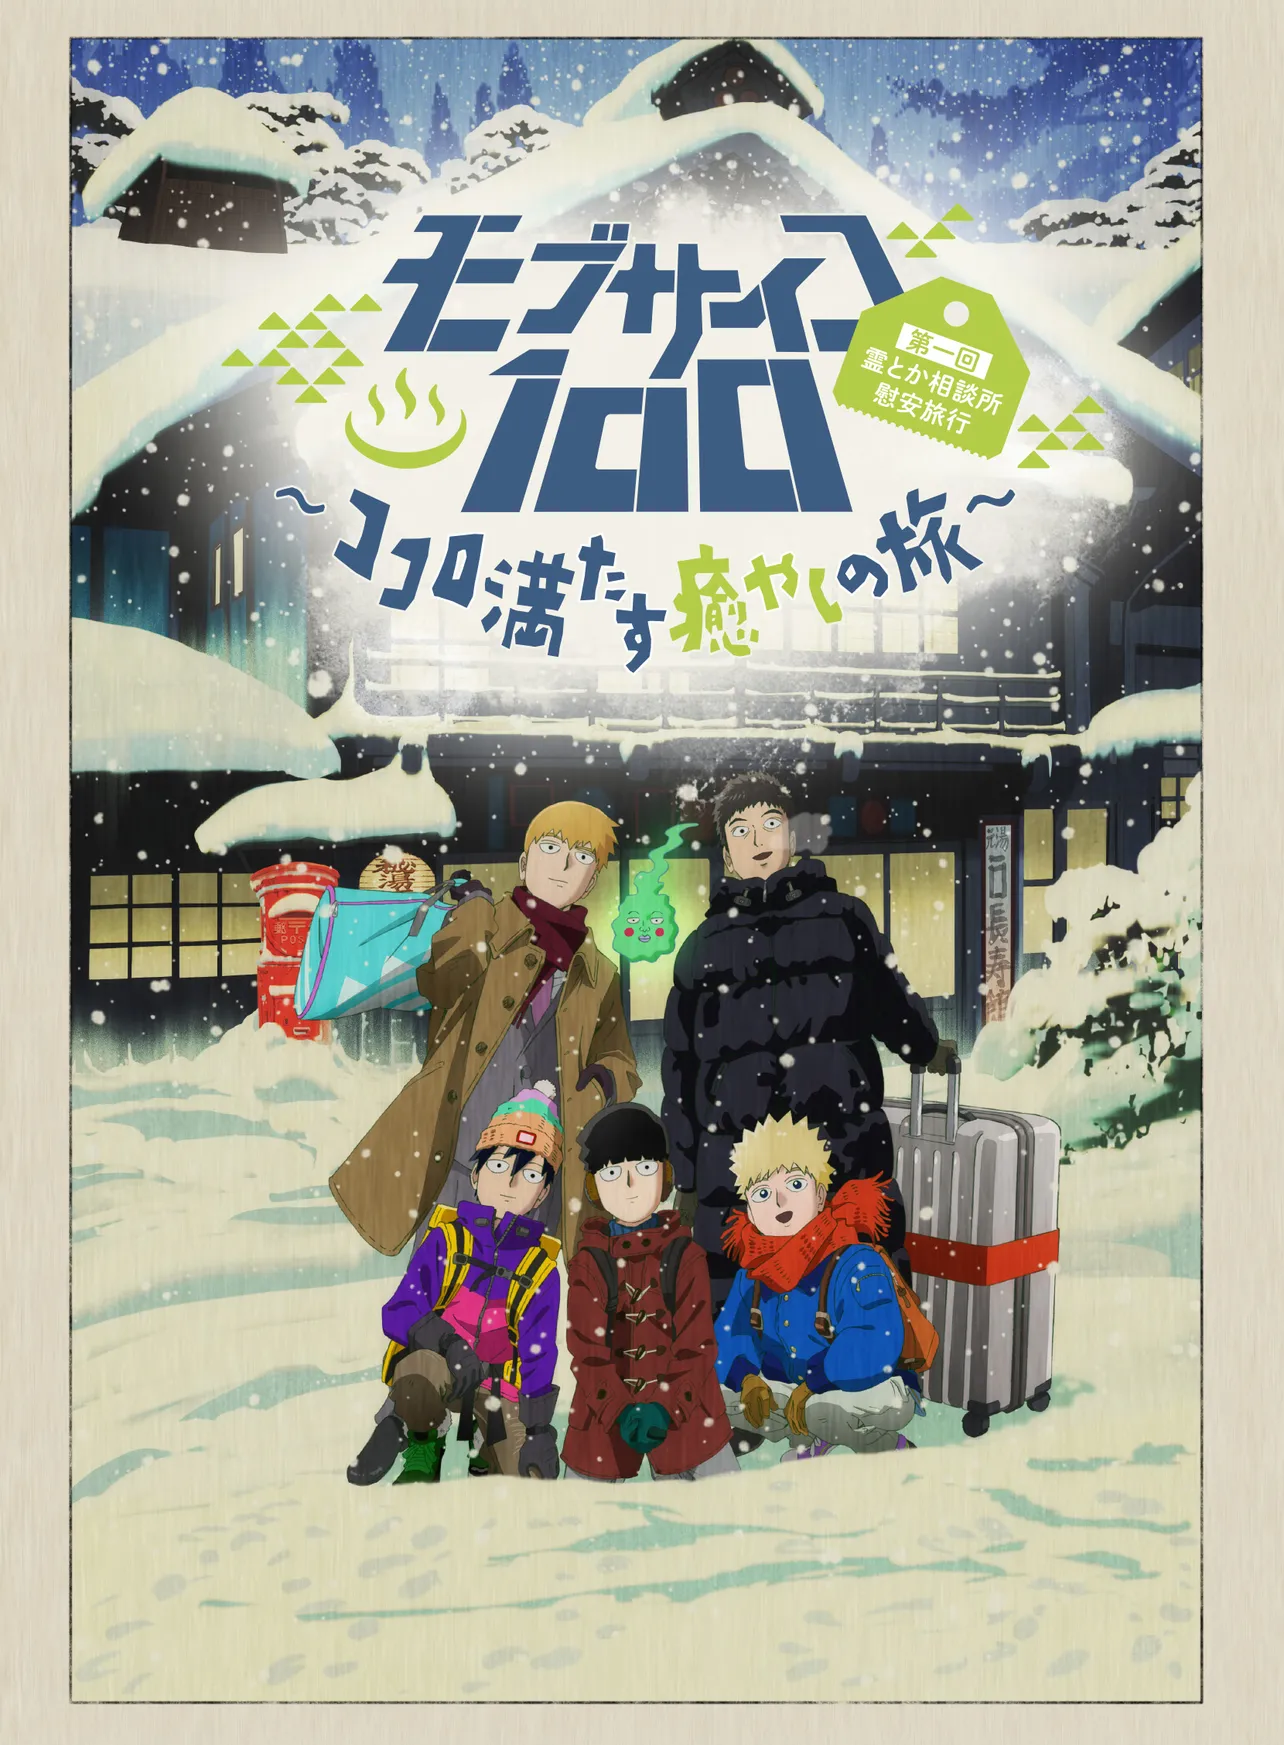 「モブサイコ100」完全新作OVAは2019年9月25日(水)発売